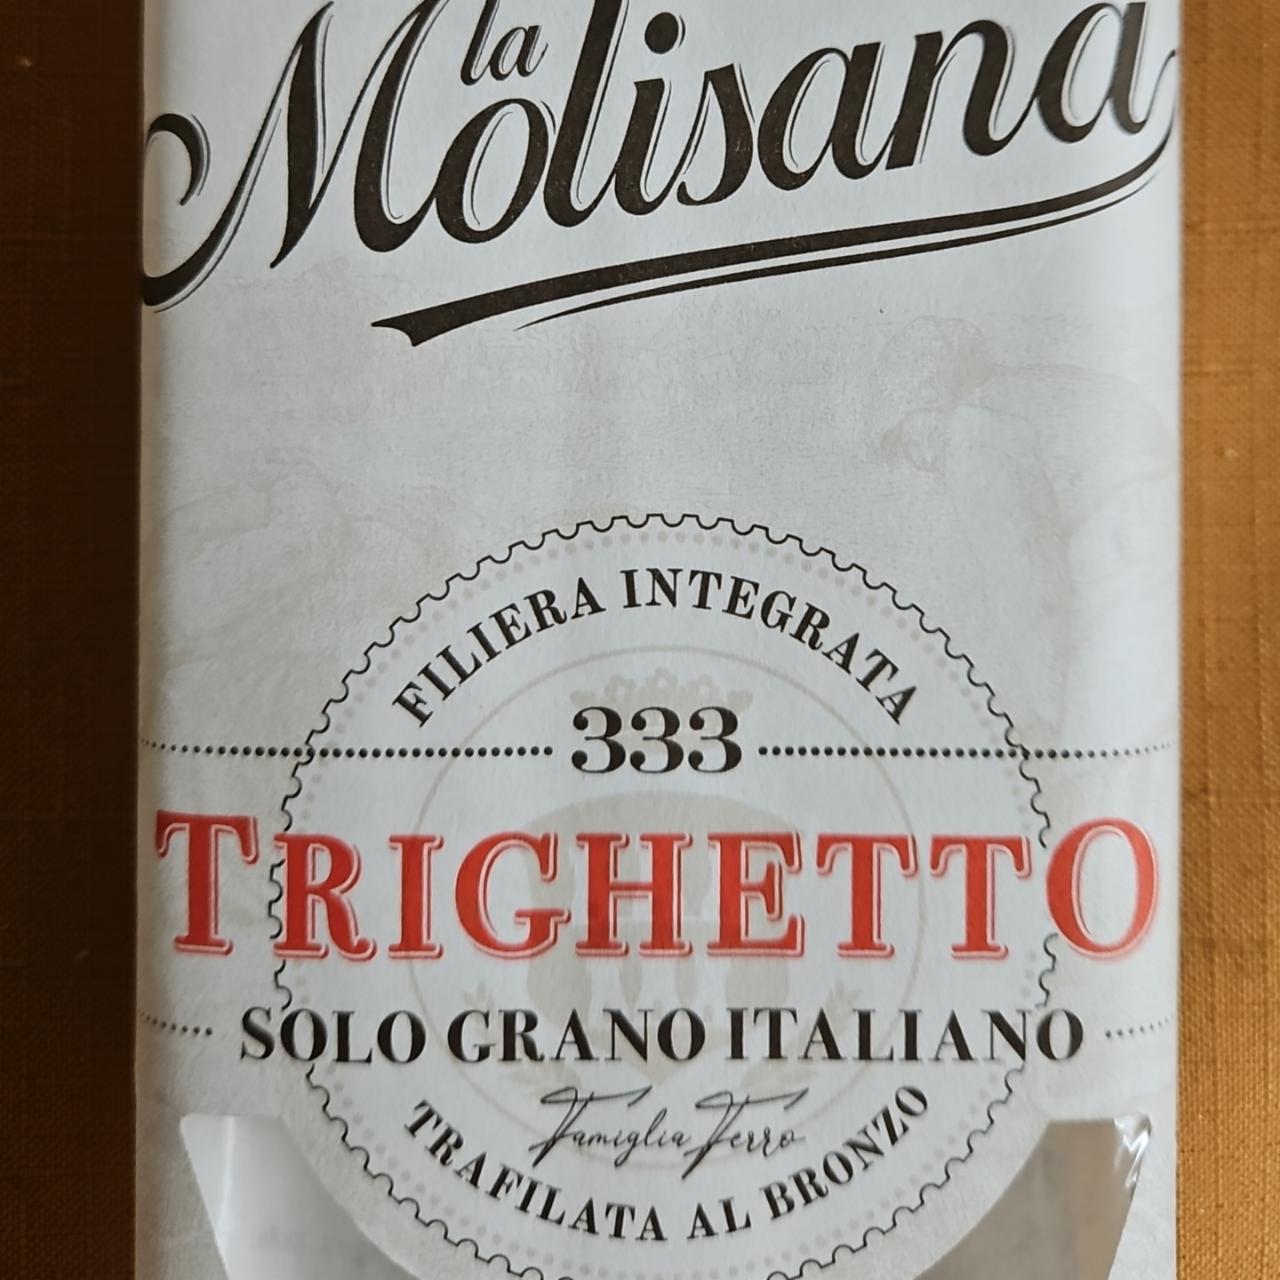 Fotografie - Trighetto Solo Grano Italiano La Molisana